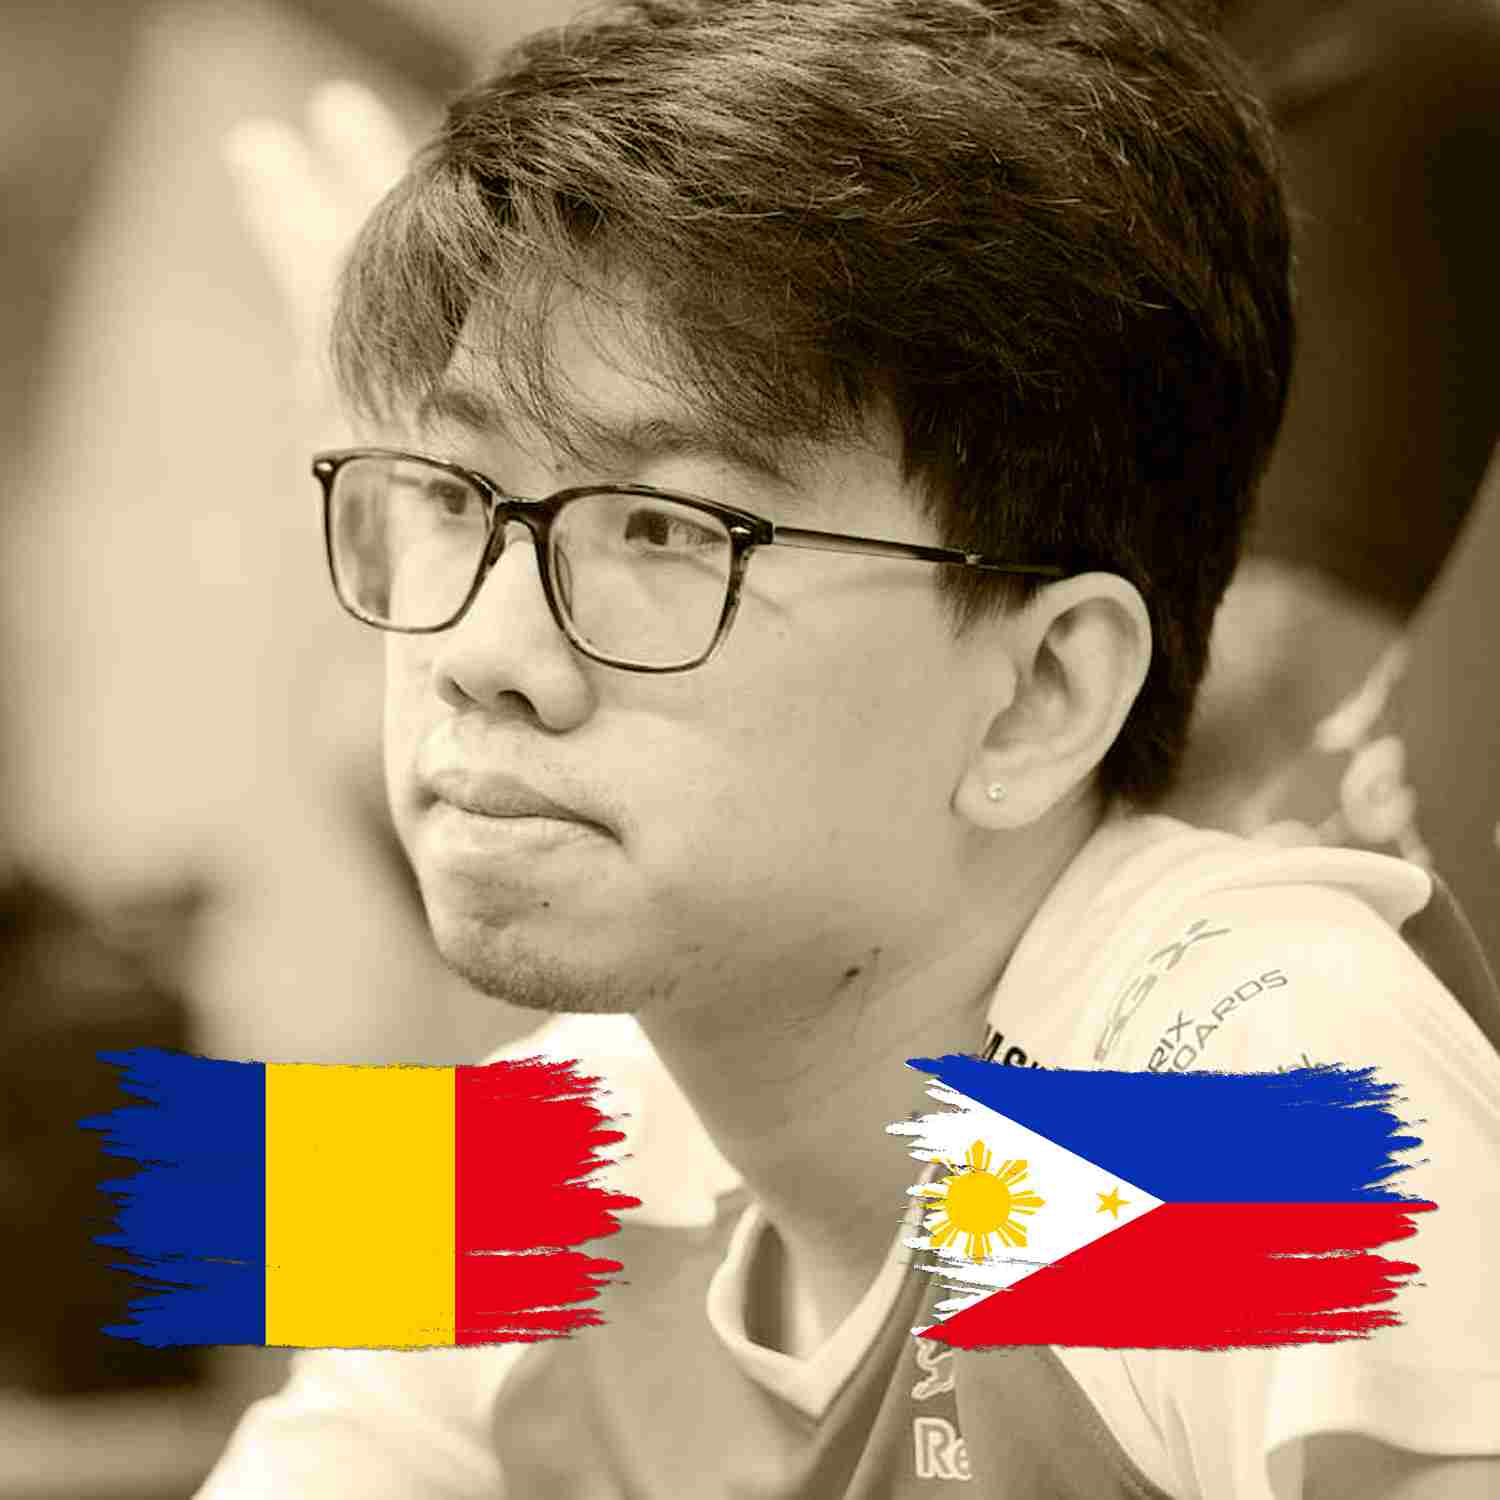 Jugadores filipinos varados en Rumania después de The International